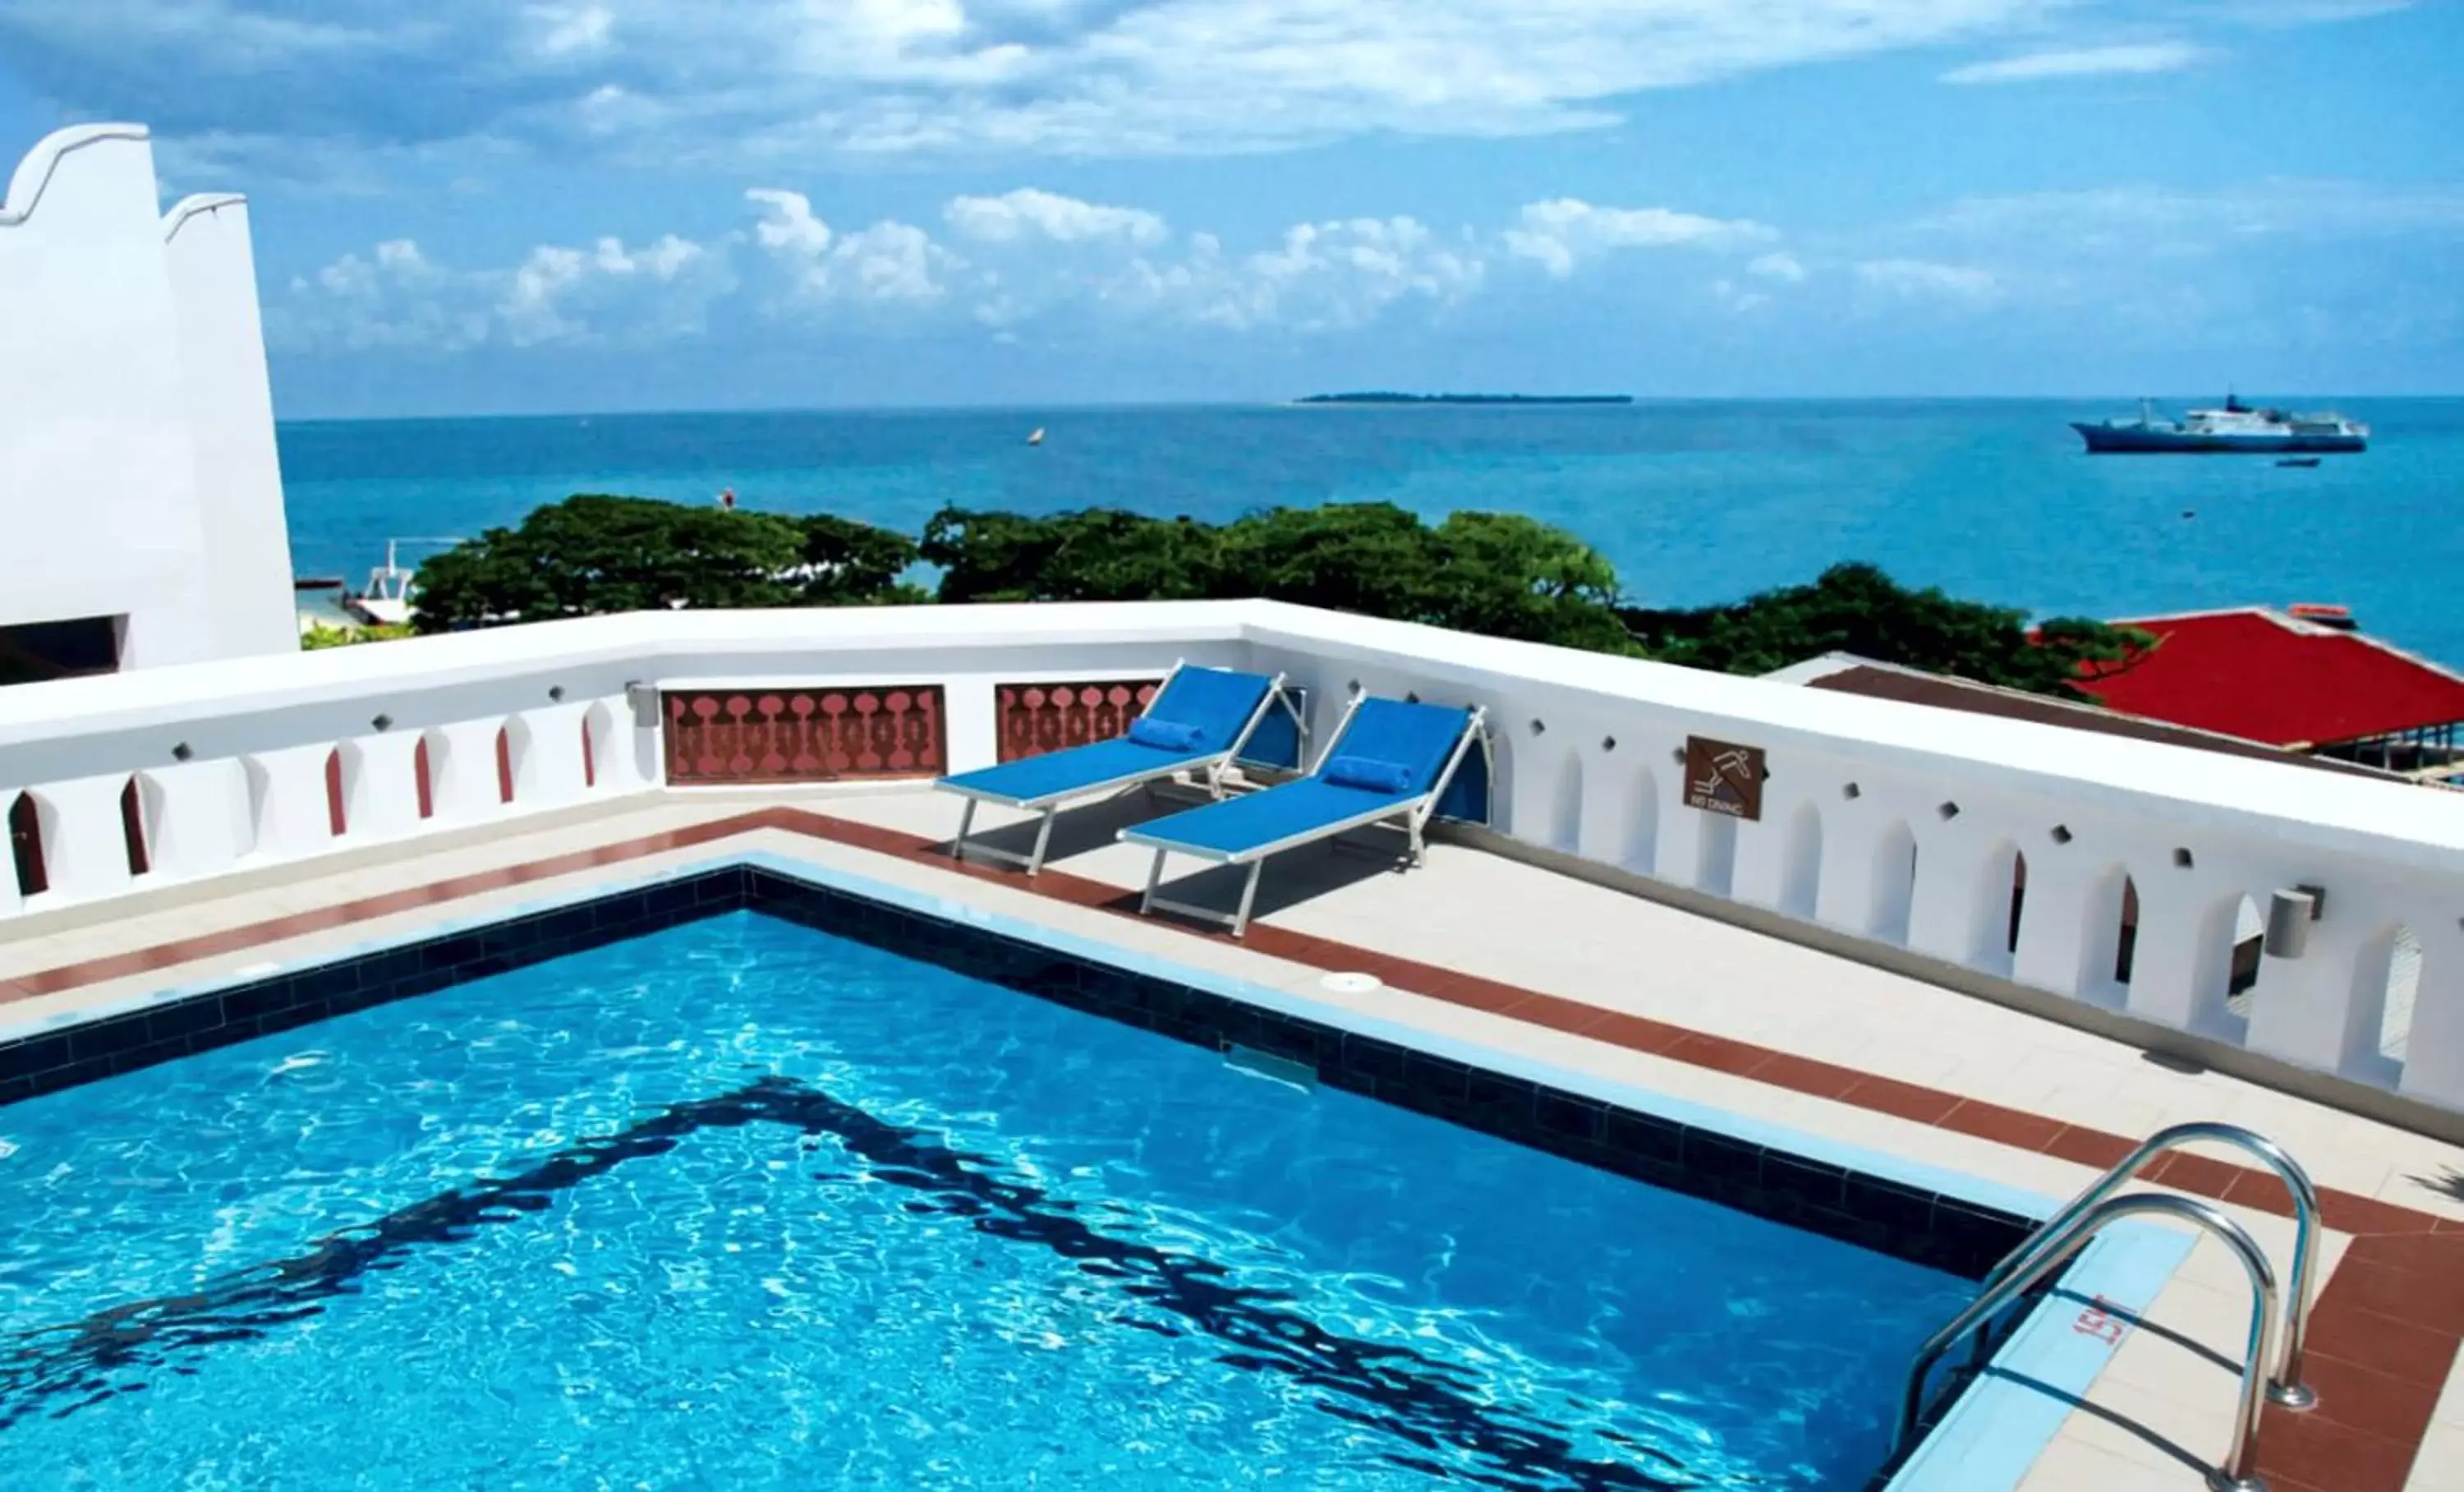 Activities, Swimming Pool in Maru Maru Hotel